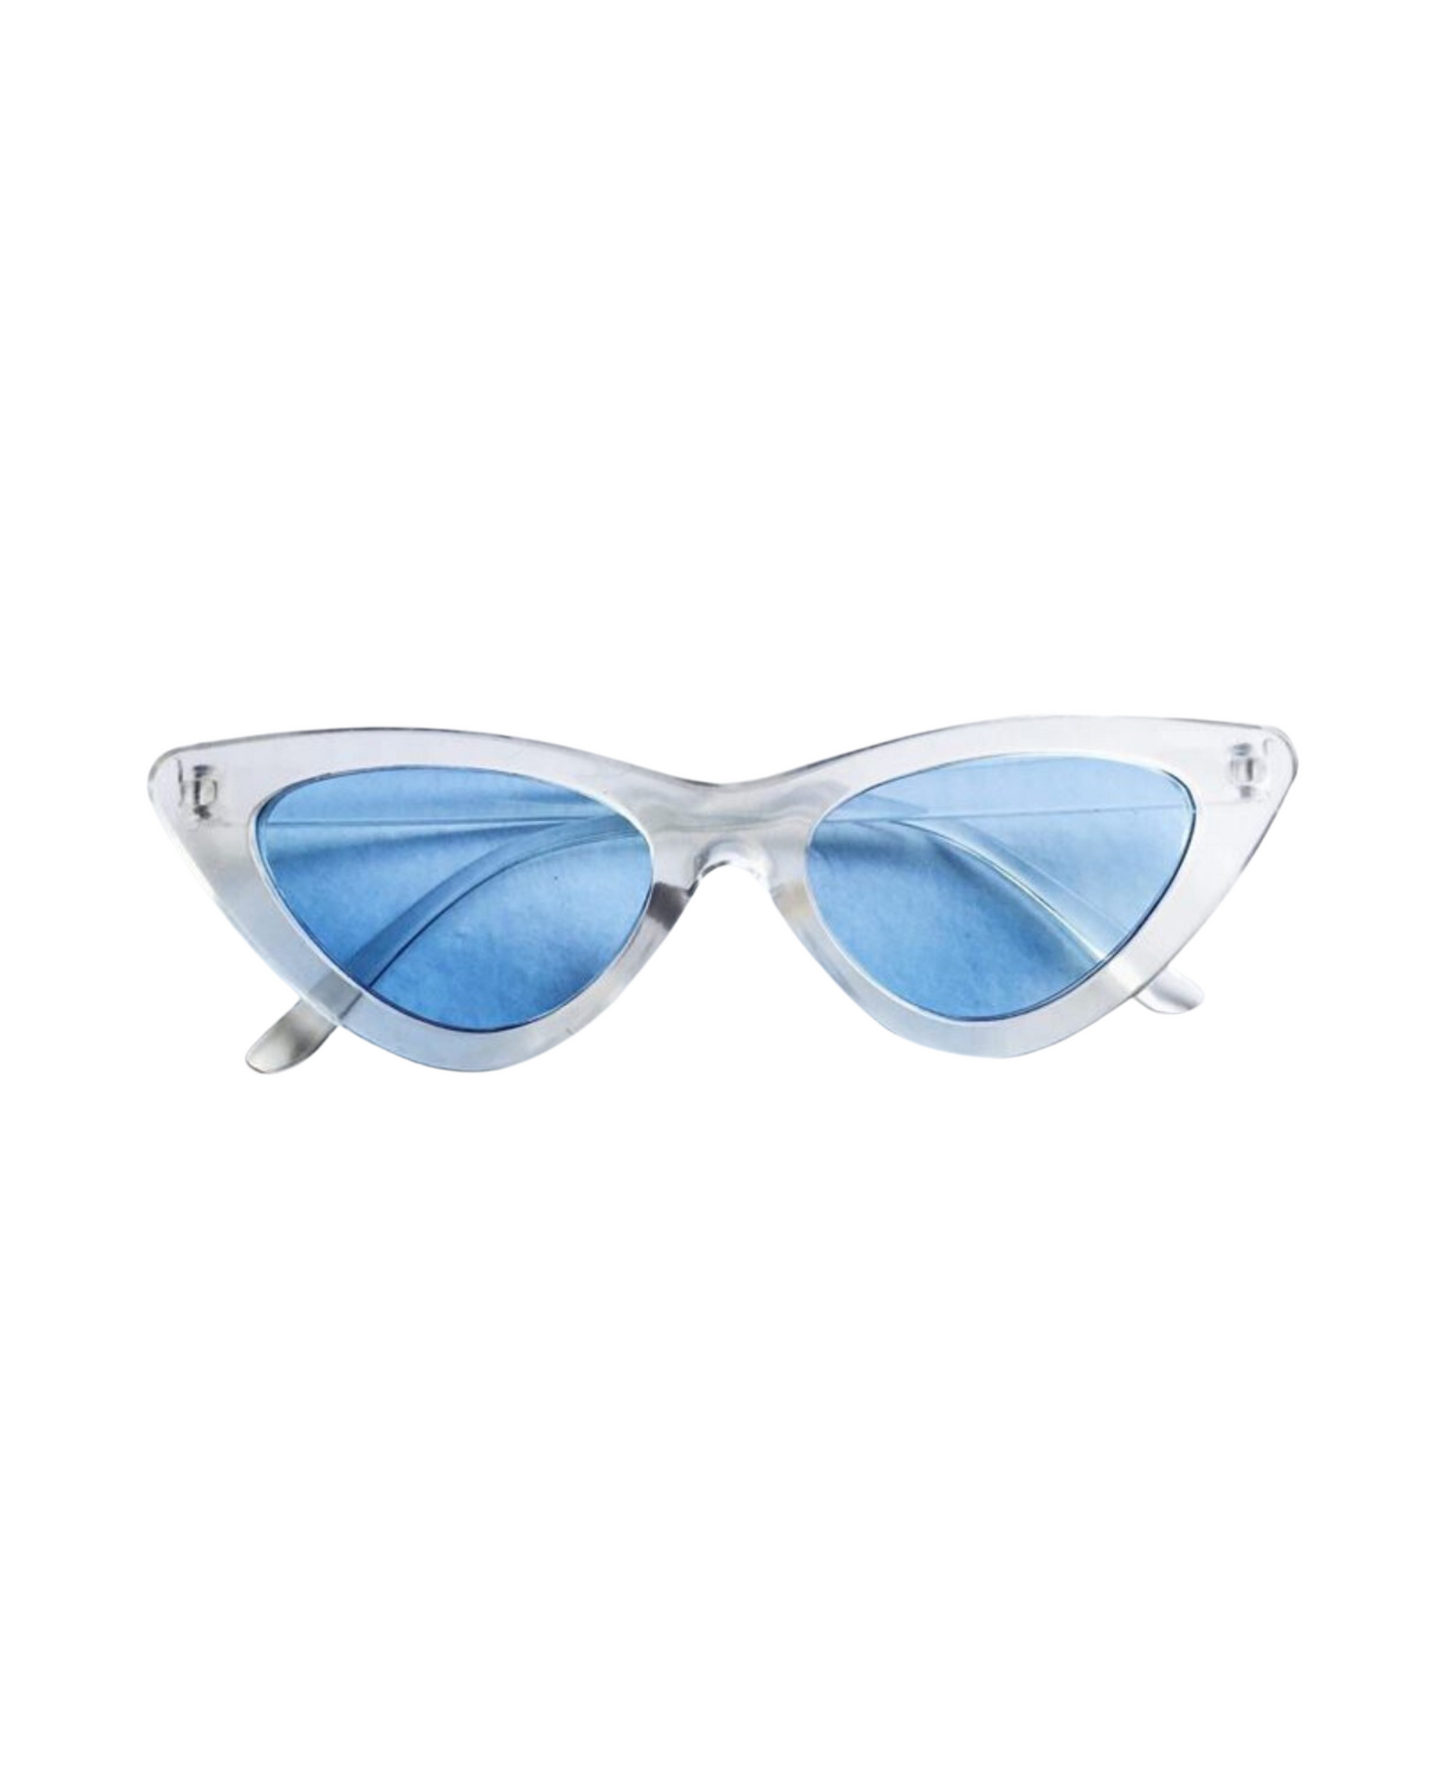 Clear Cat Eye Glasses Blue Lenses